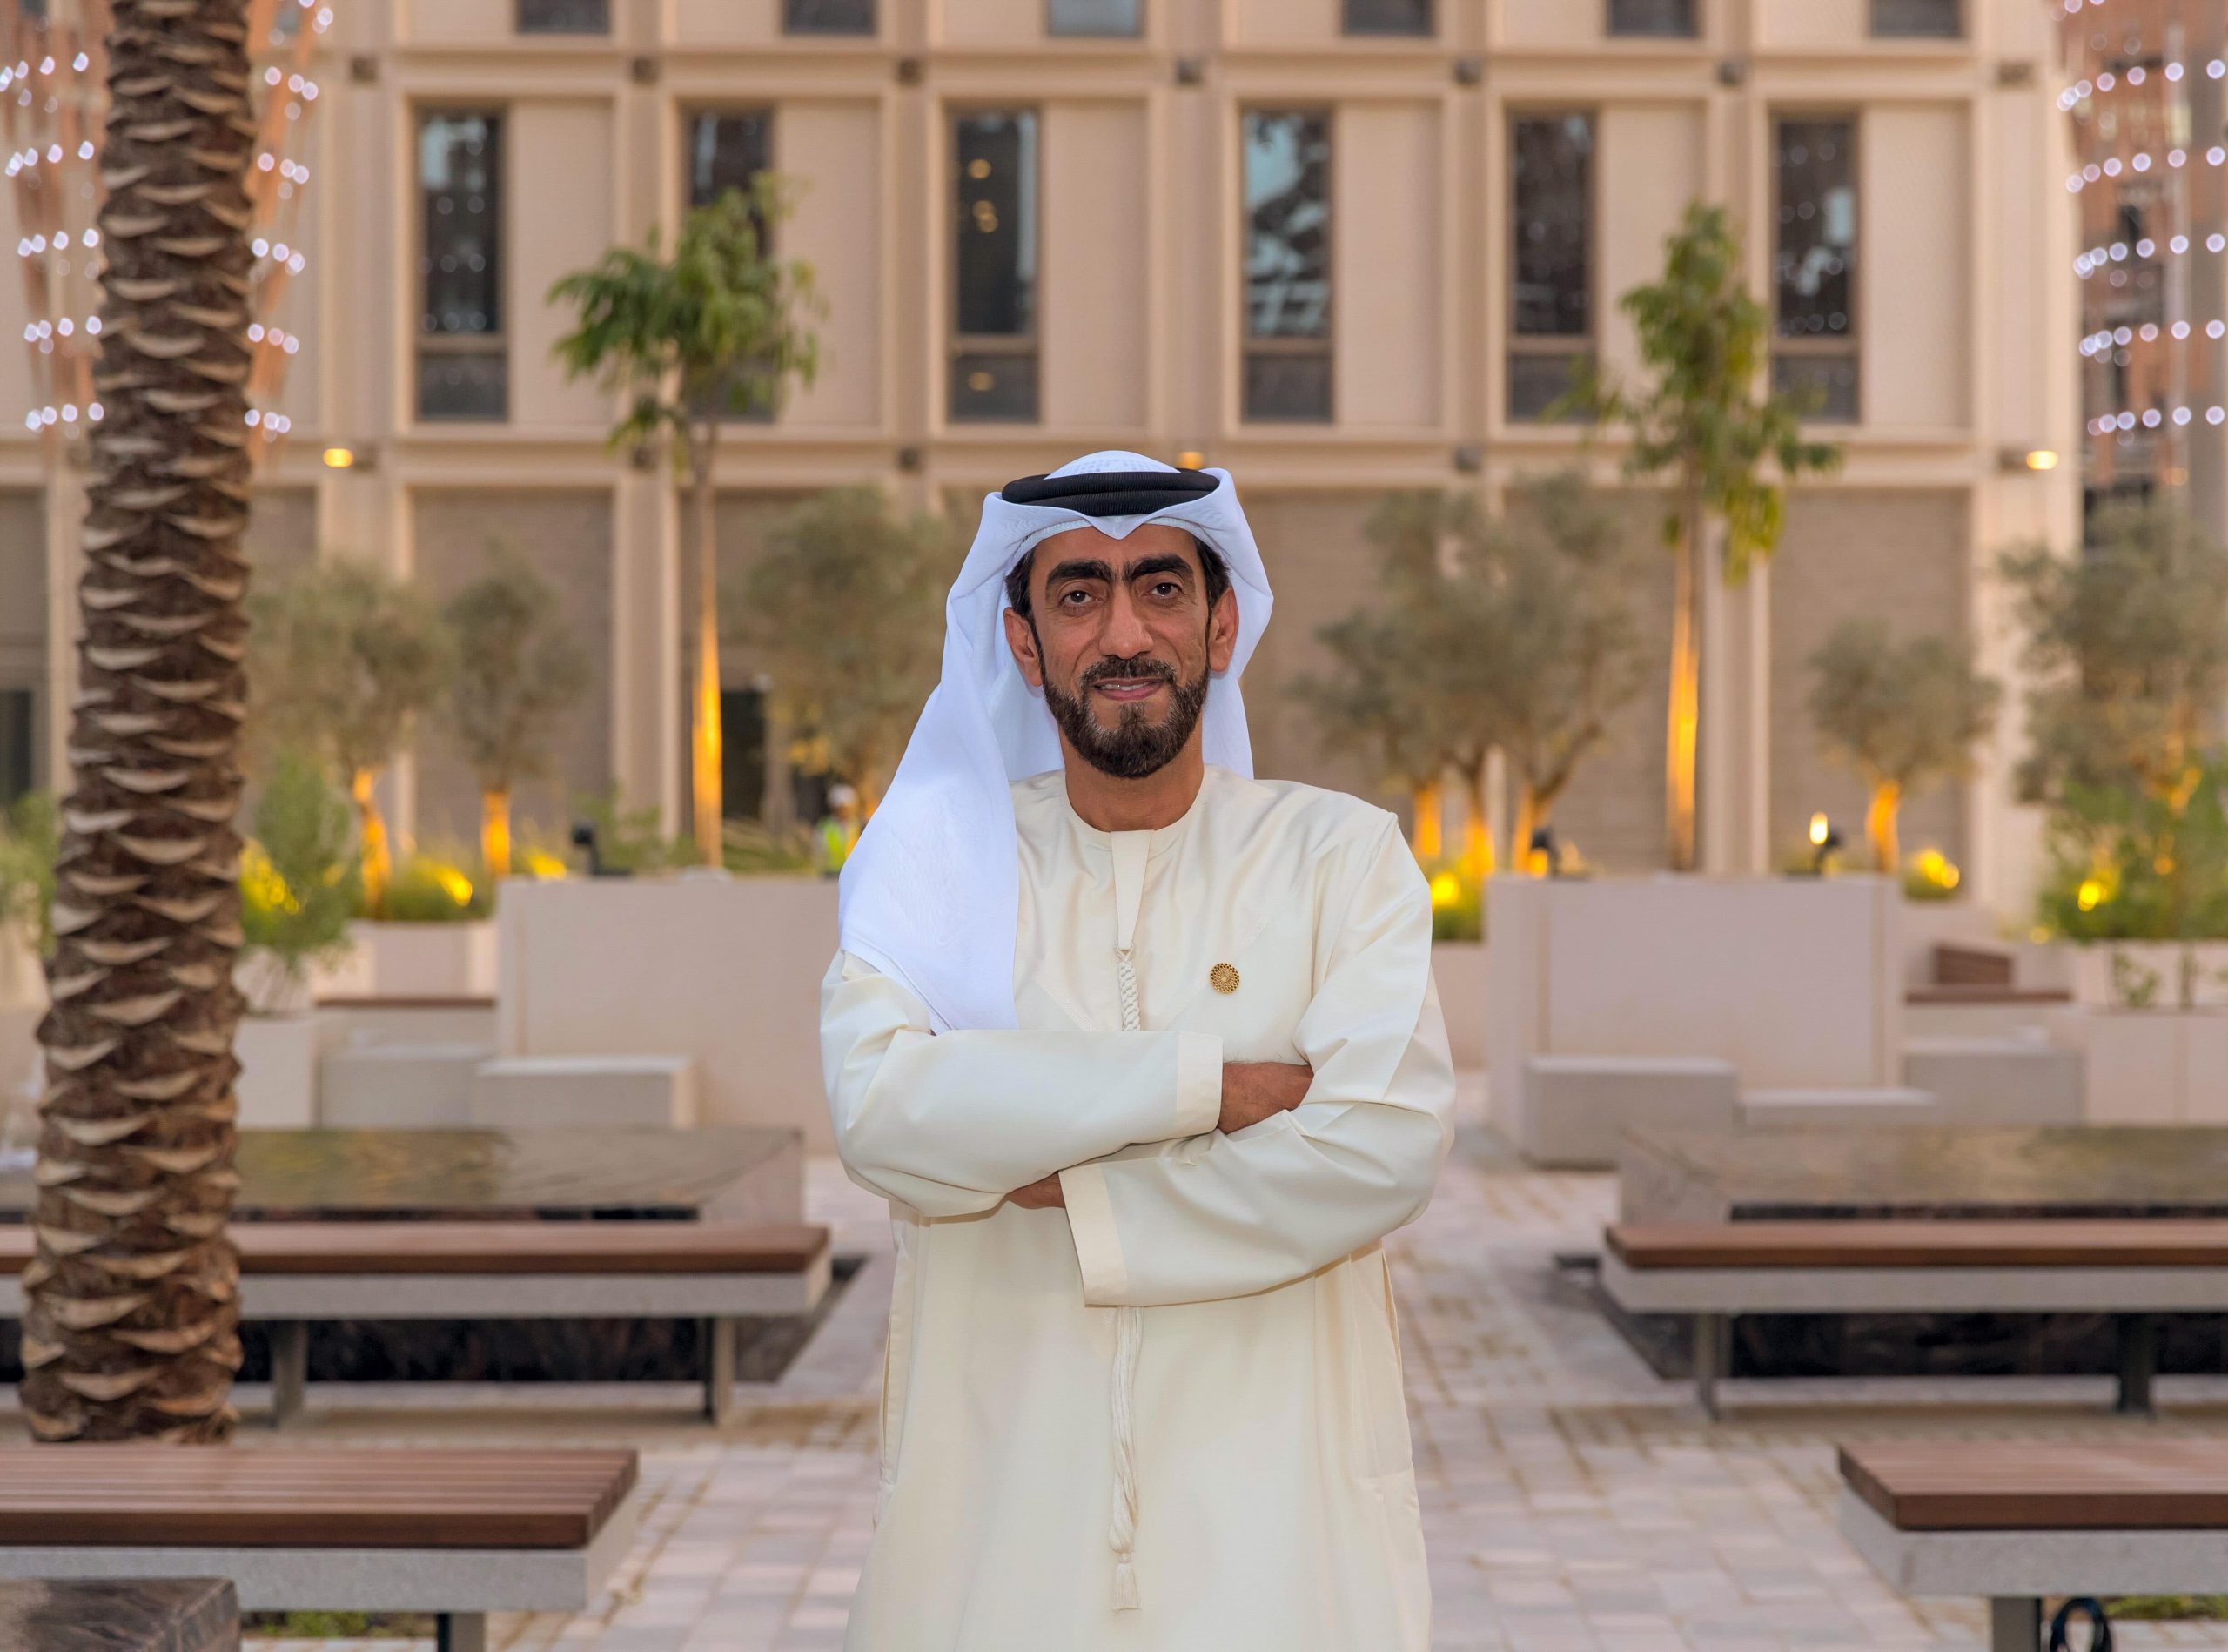 Mohammed Alhashmi, Expo 2020 Dubai